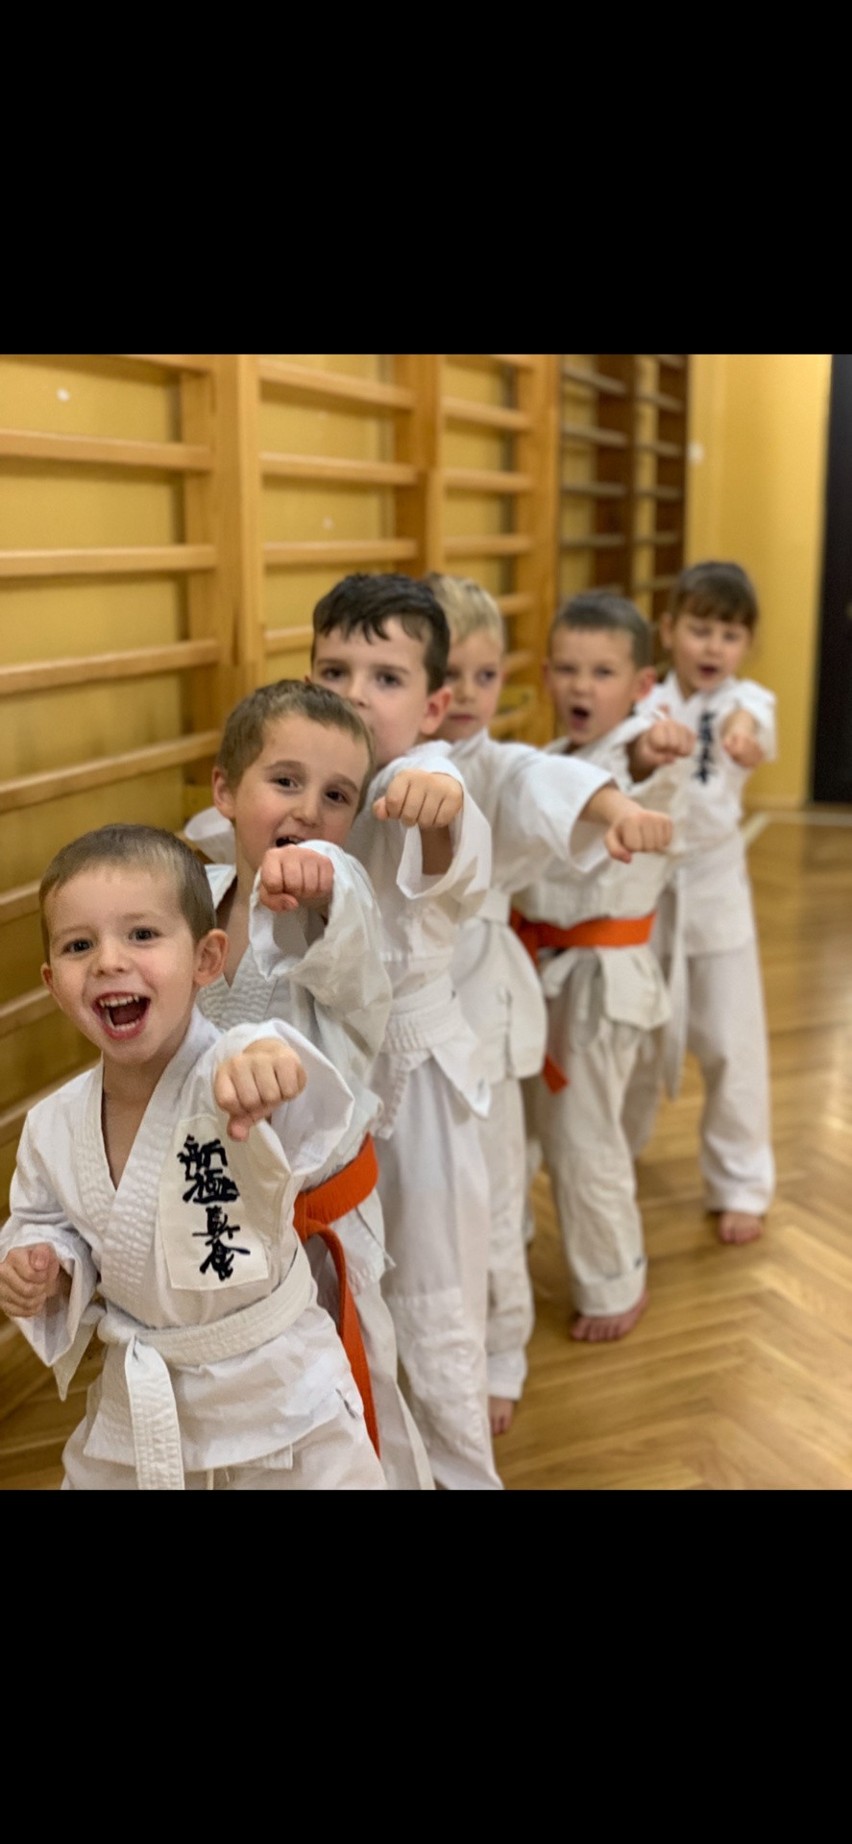 Ruszyły treningi karate w Kielcach i powiecie kieleckim. Do grup mogą dołączać dzieci, młodzież i dorośli (ZDJĘCIA)